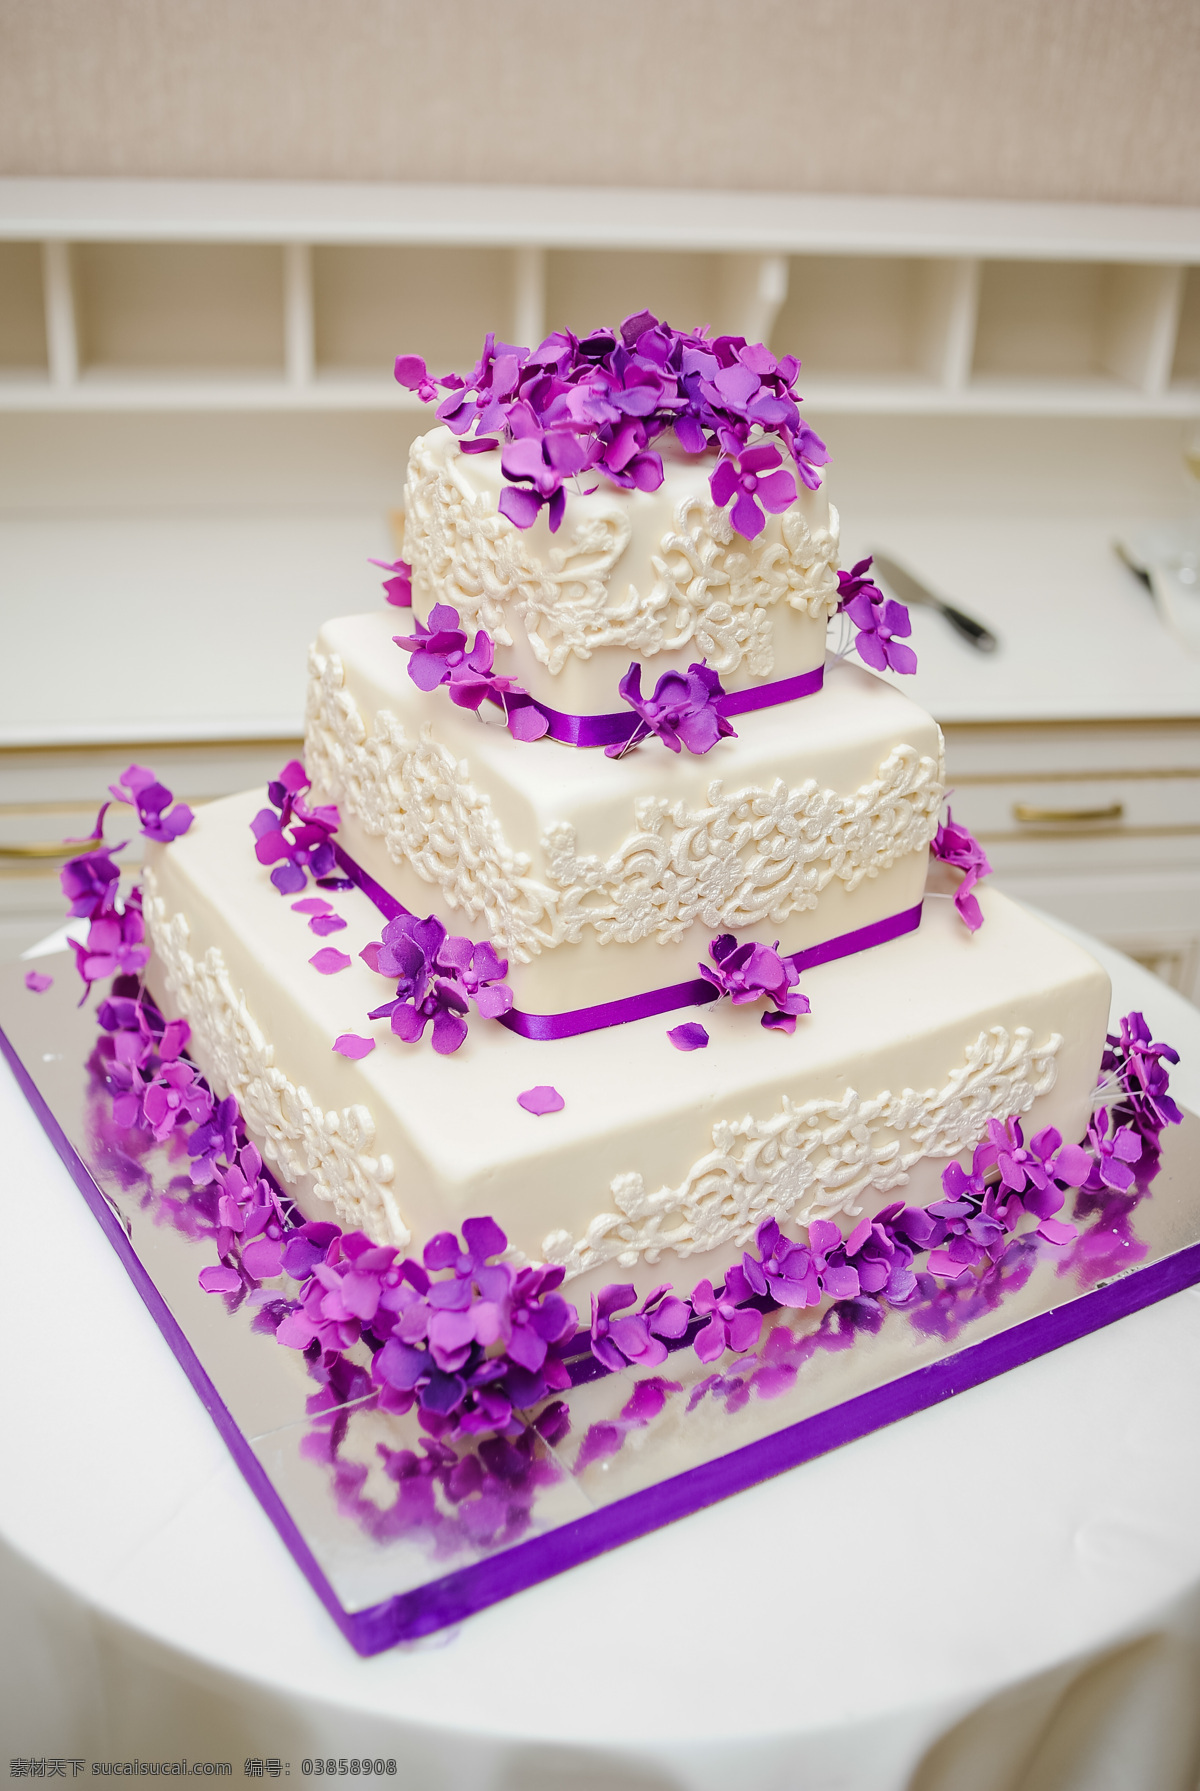 方形 蛋糕 婚礼蛋糕 蛋糕摄影 糕点 甜品美食 食物摄影 生日蛋糕图片 餐饮美食